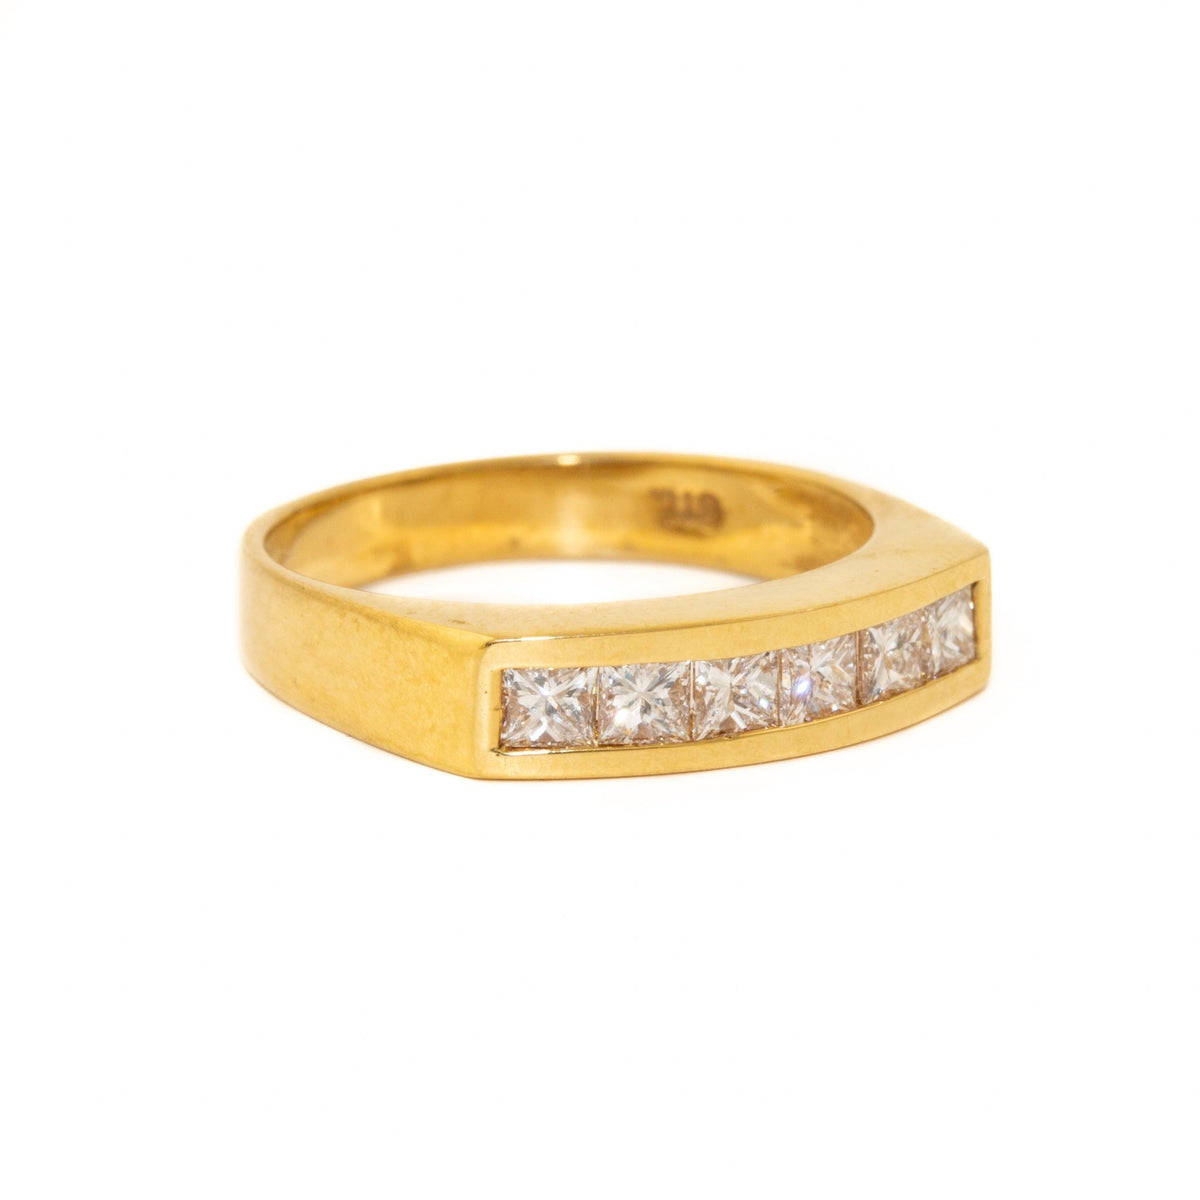 Futuristic 14 KT Channel Set Diamond Ring - Kingdom Jewelry